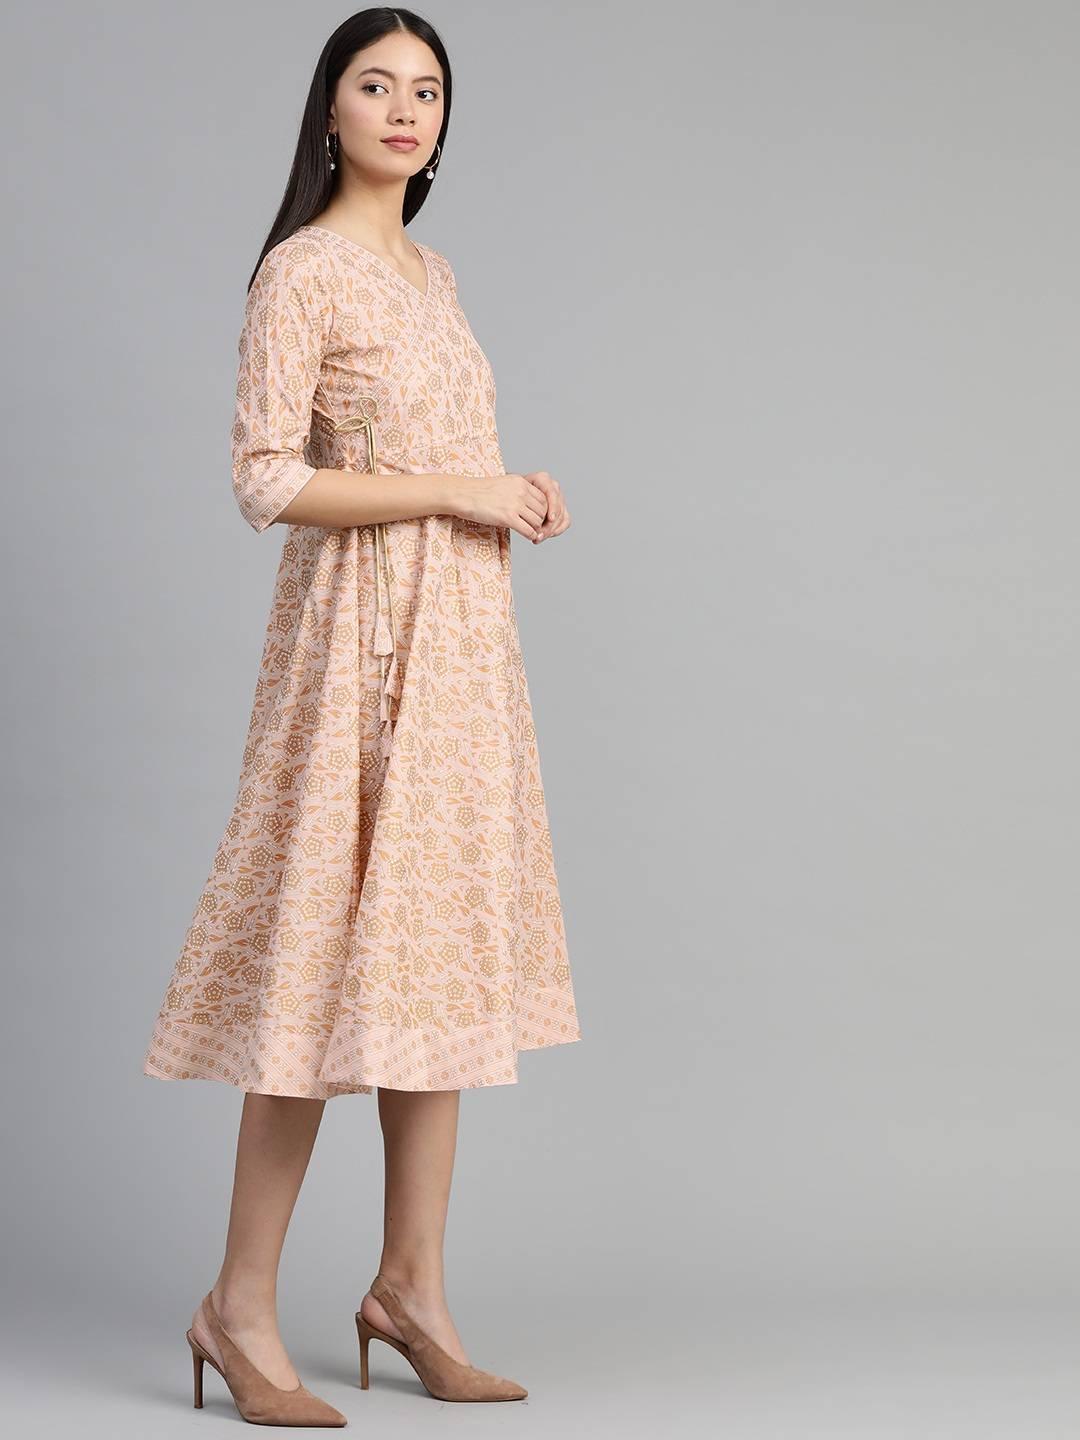 Peach Printed Cotton Dress - Libas